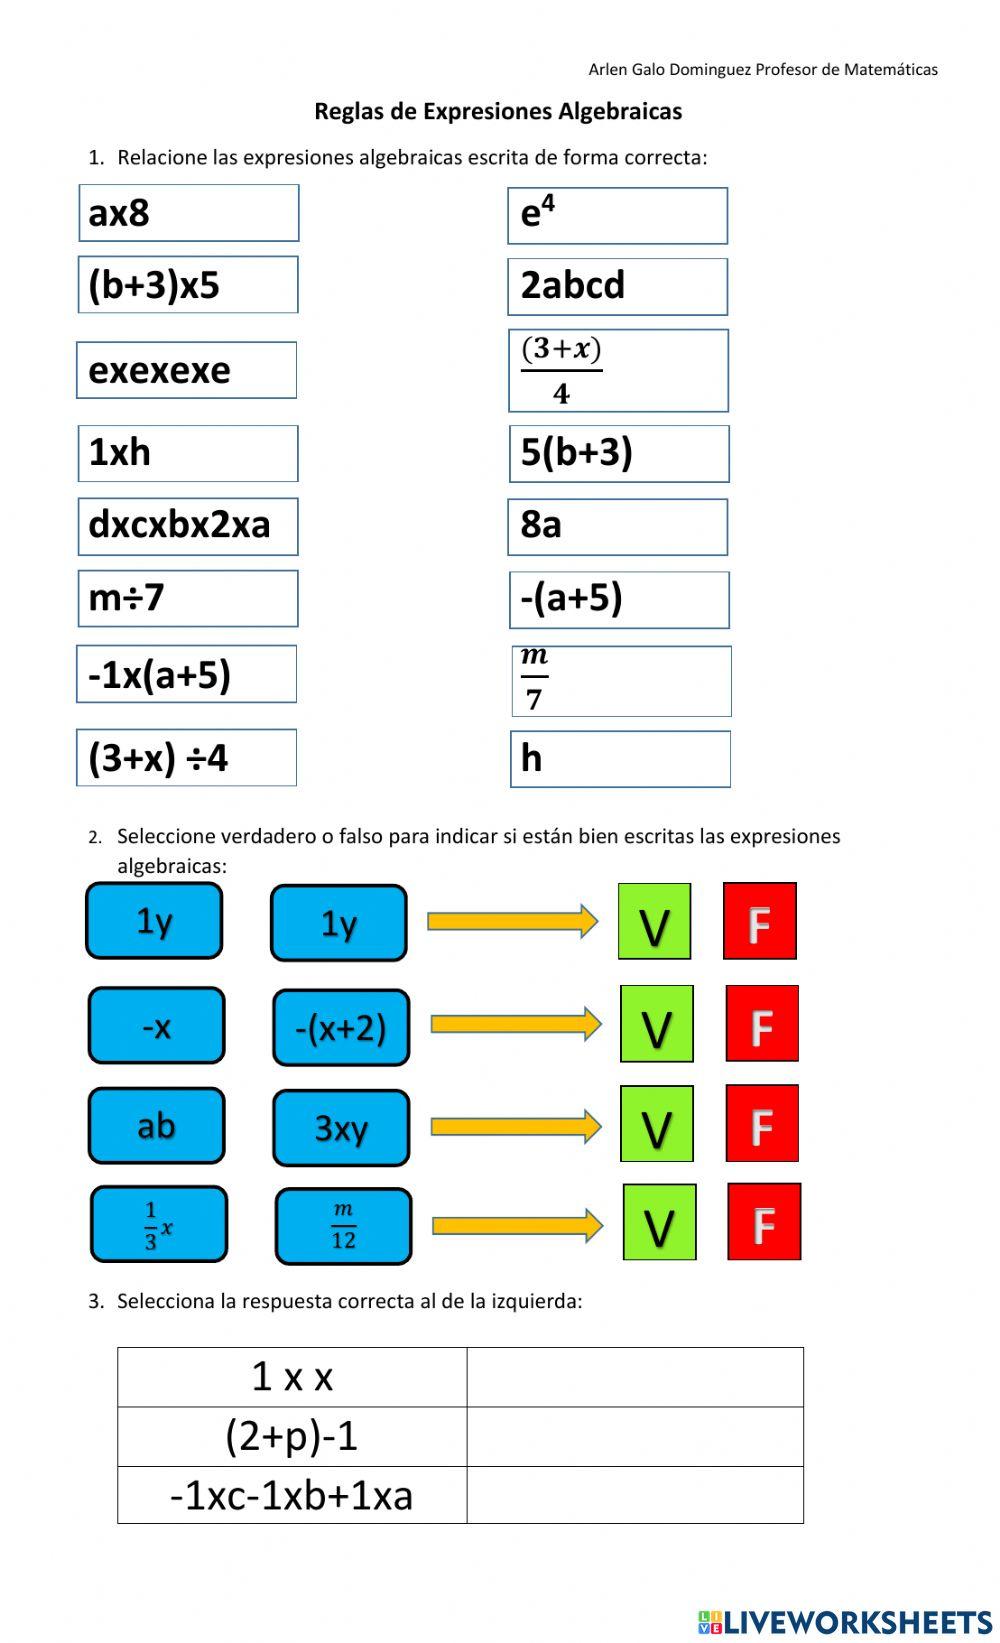 Lecciòn 2 Reglas convencionales de expresiones algebraicas